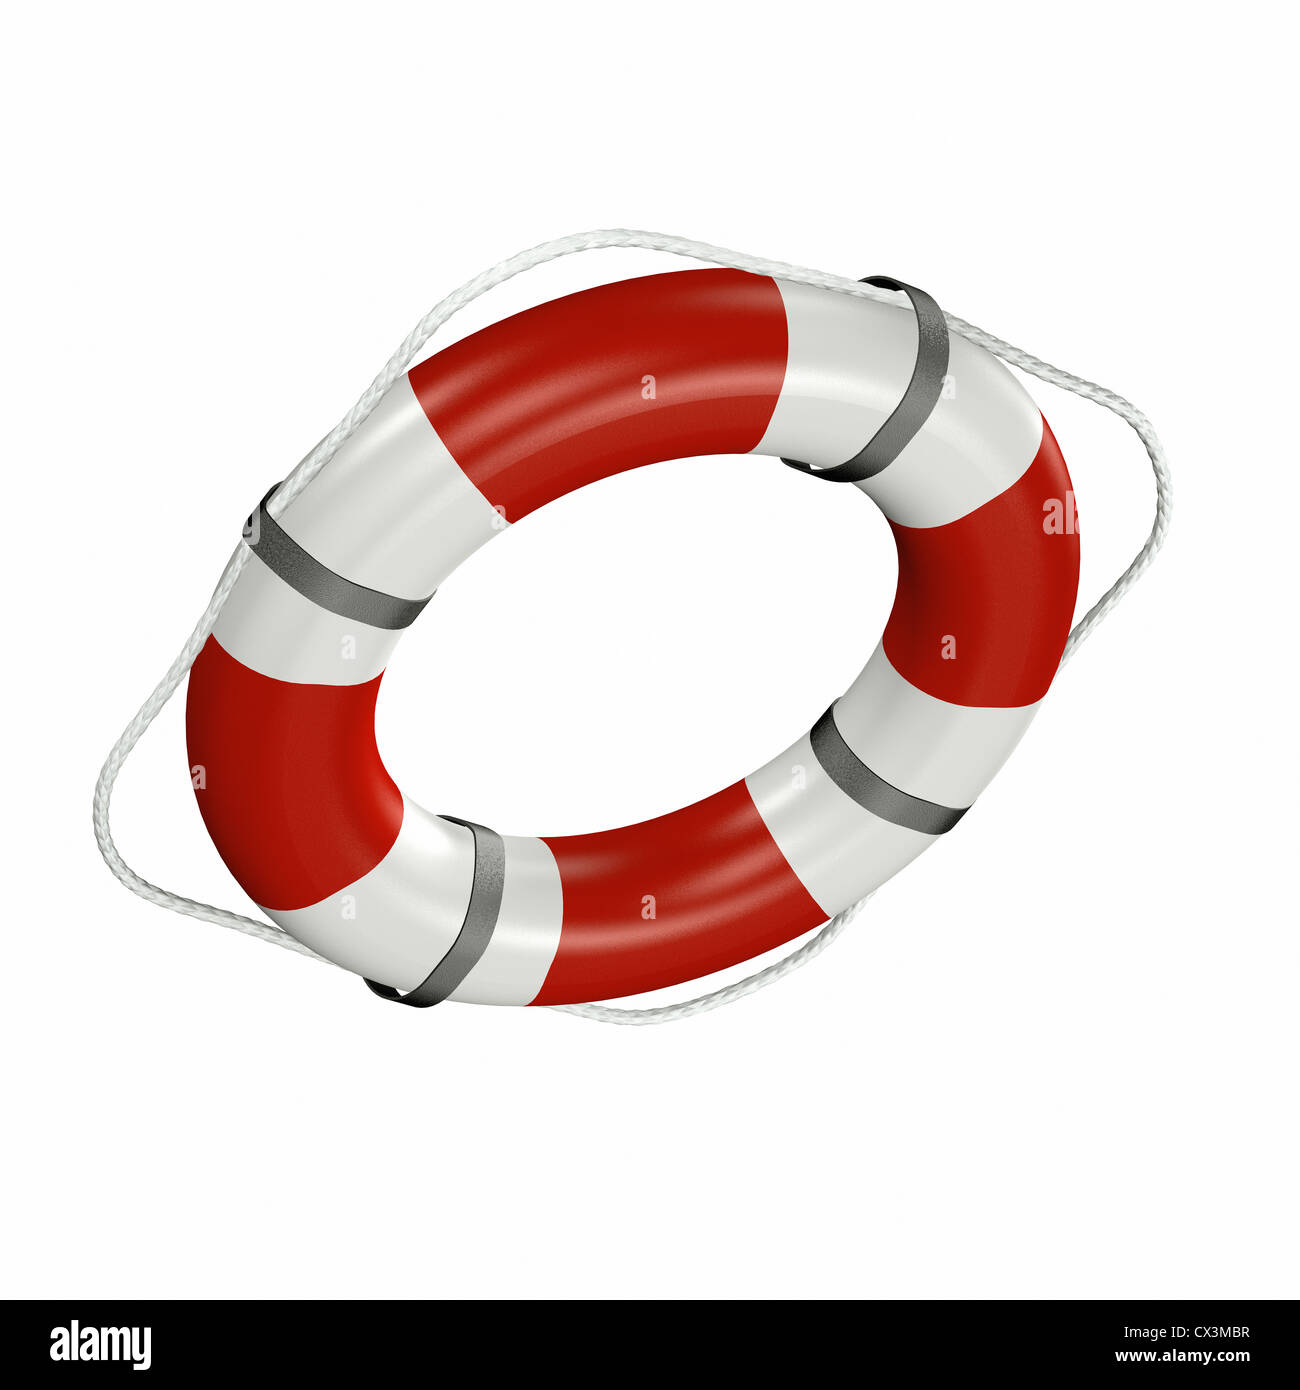 rot-weisser Rettungsring auf weissem Hintergrund - life-saver Stock Photo